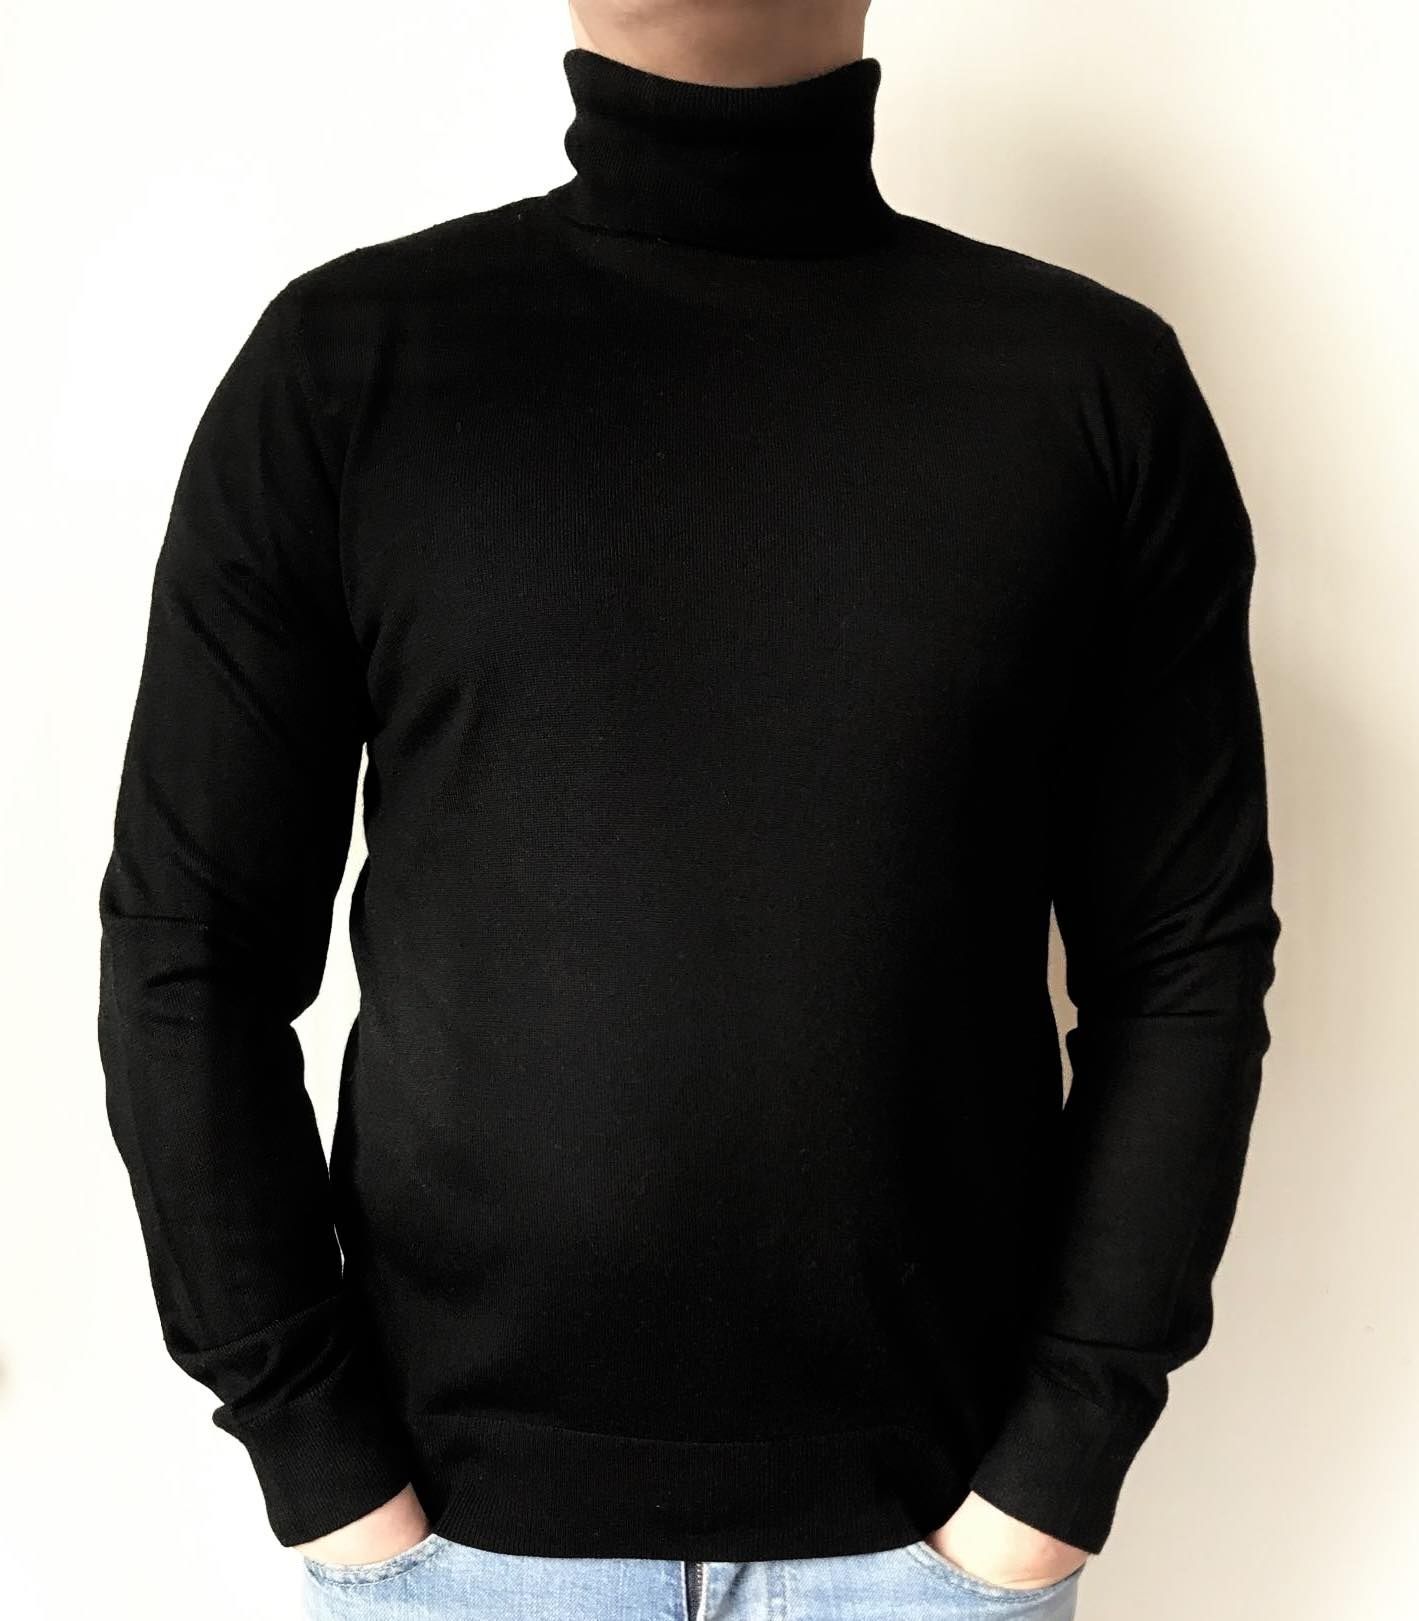 H&M golf sweter męski M wełwełna merino
Rozmiar:M
kolor:czarny 
Stan:i